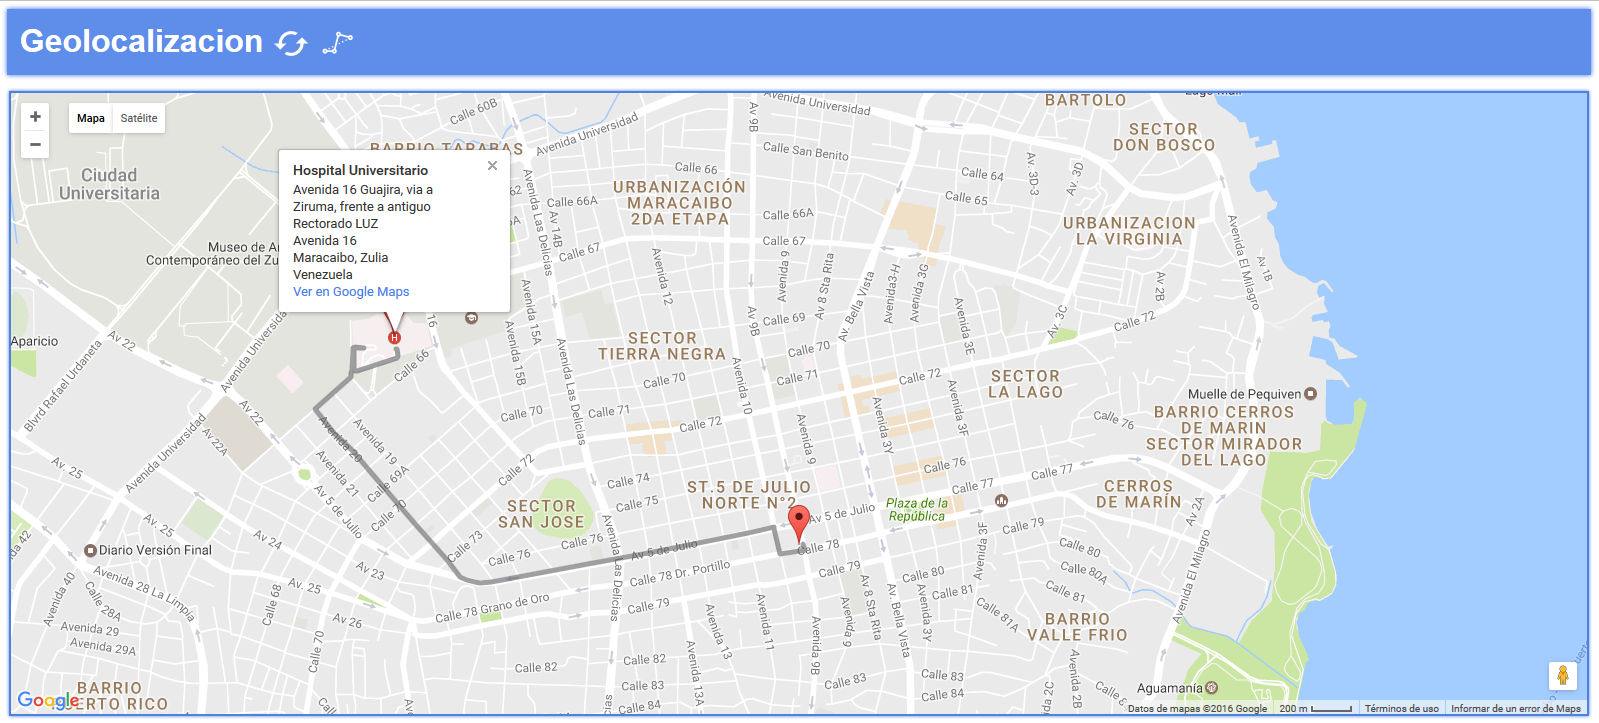 Geolocalización con Google Maps